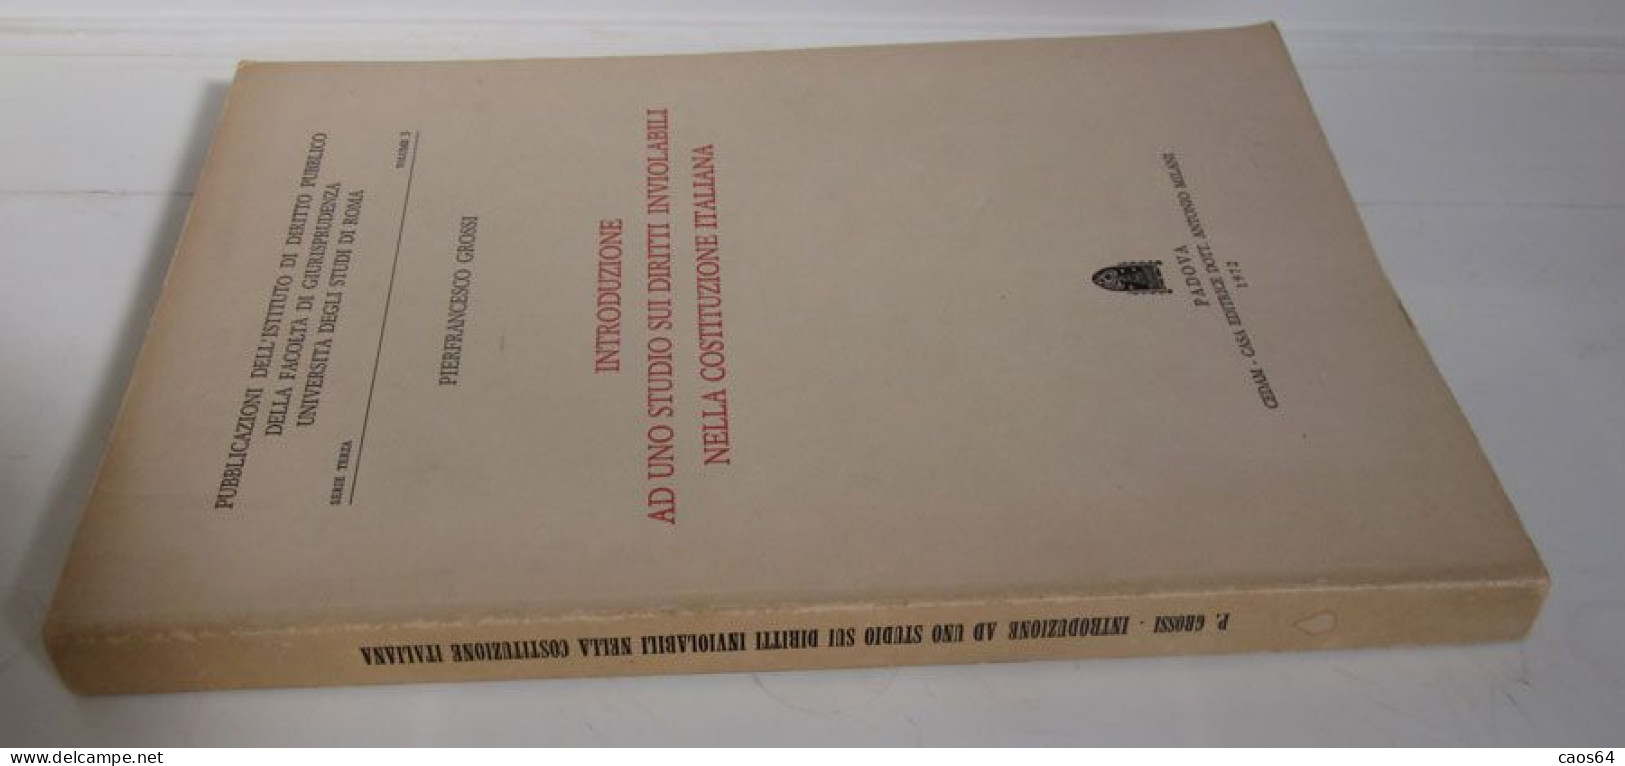 Introduzione Ad Uno Studio Sui Diritti Inviolabili Nella Costituzione Italiana 1972 Pierfrancesco Grossi CEDAM - Law & Economics